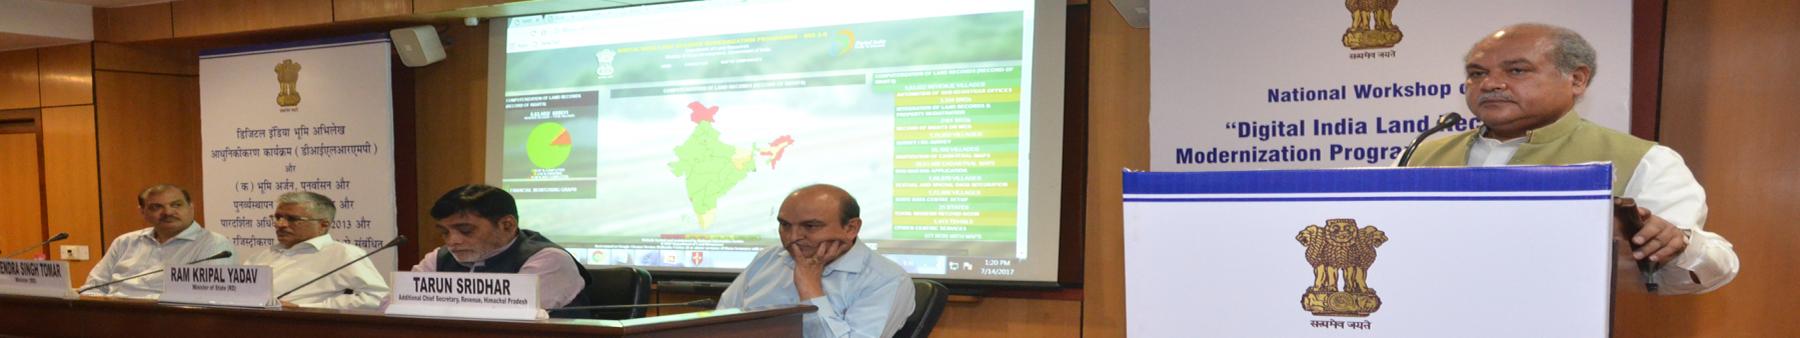 डिजिटल इंडिया भूमि संसाधन आधुनिकीकरण कार्यक्रम की राष्ट्रीय कार्यशाला